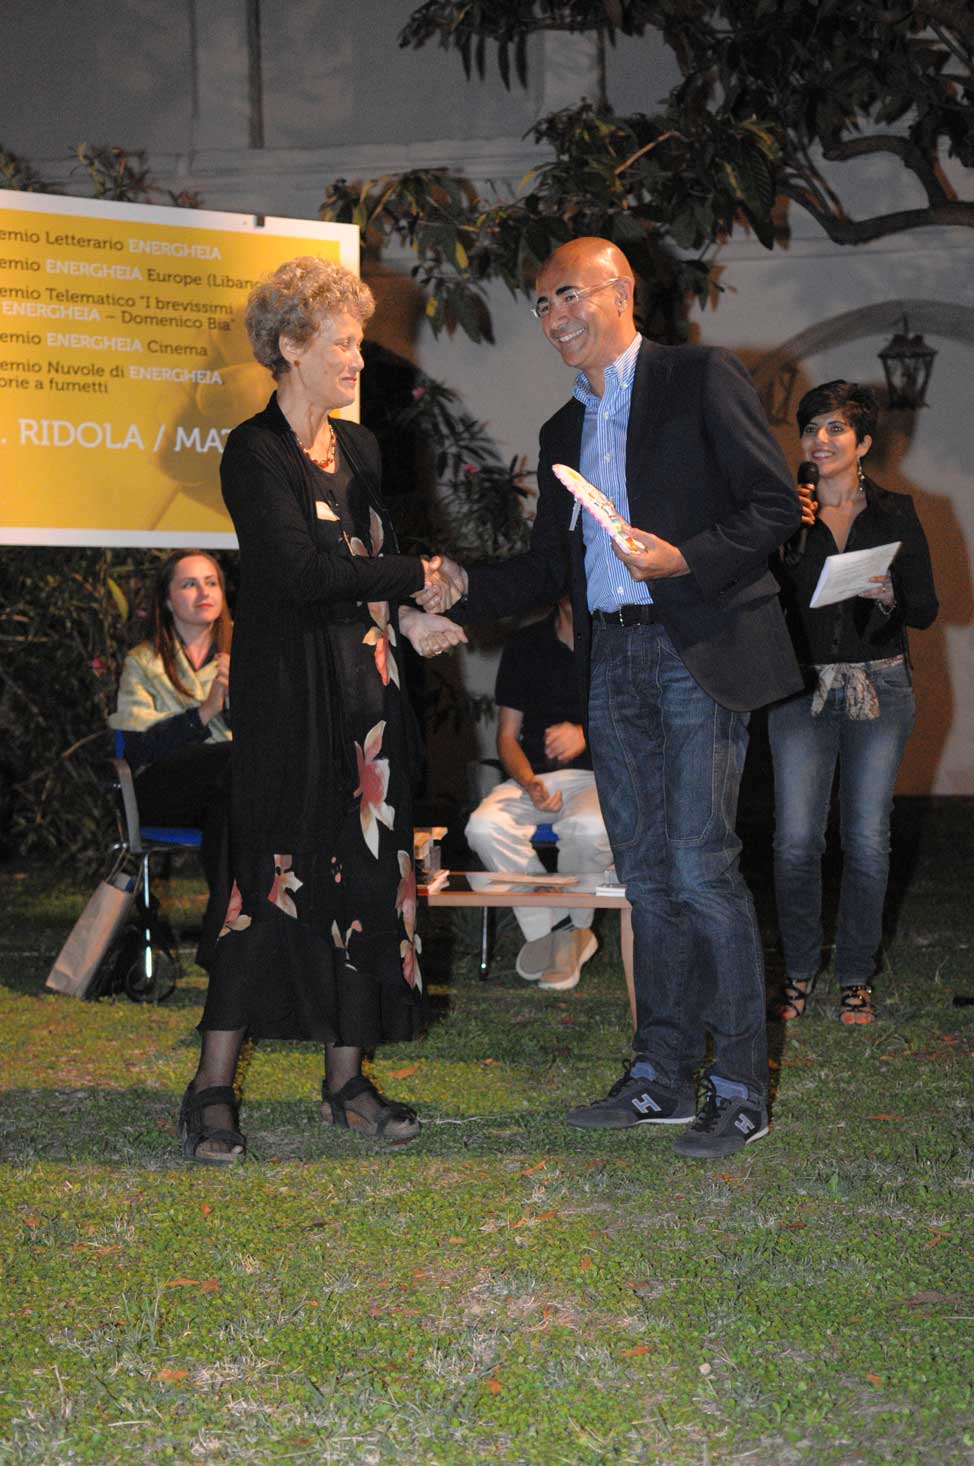 Cerimonia di consegna del Premio letterario Energheia 2010 – XVI edizione